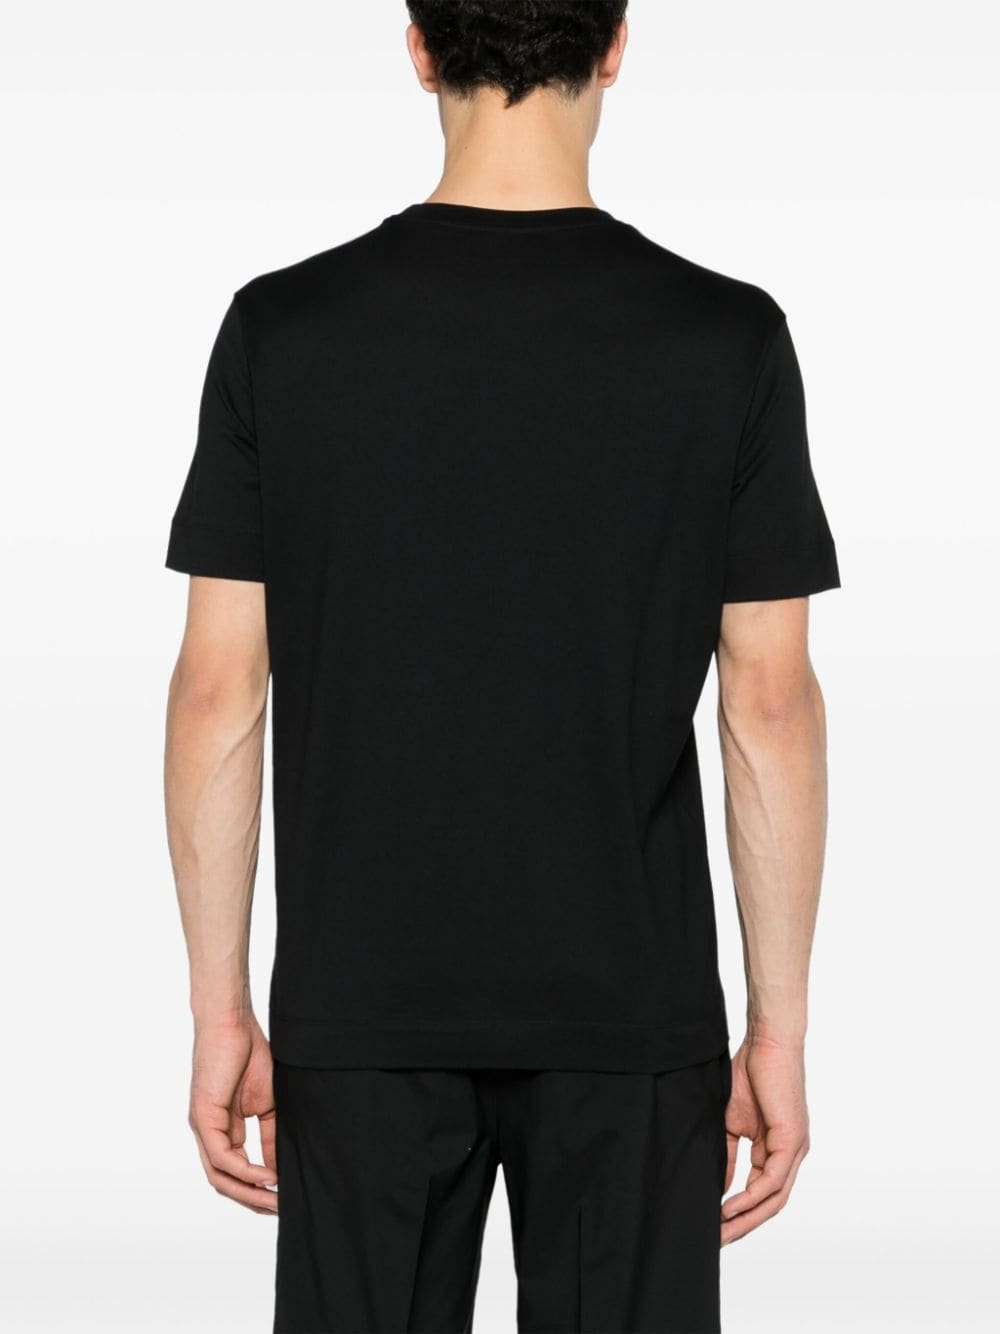 T-shirt noir avec logo Aigle central